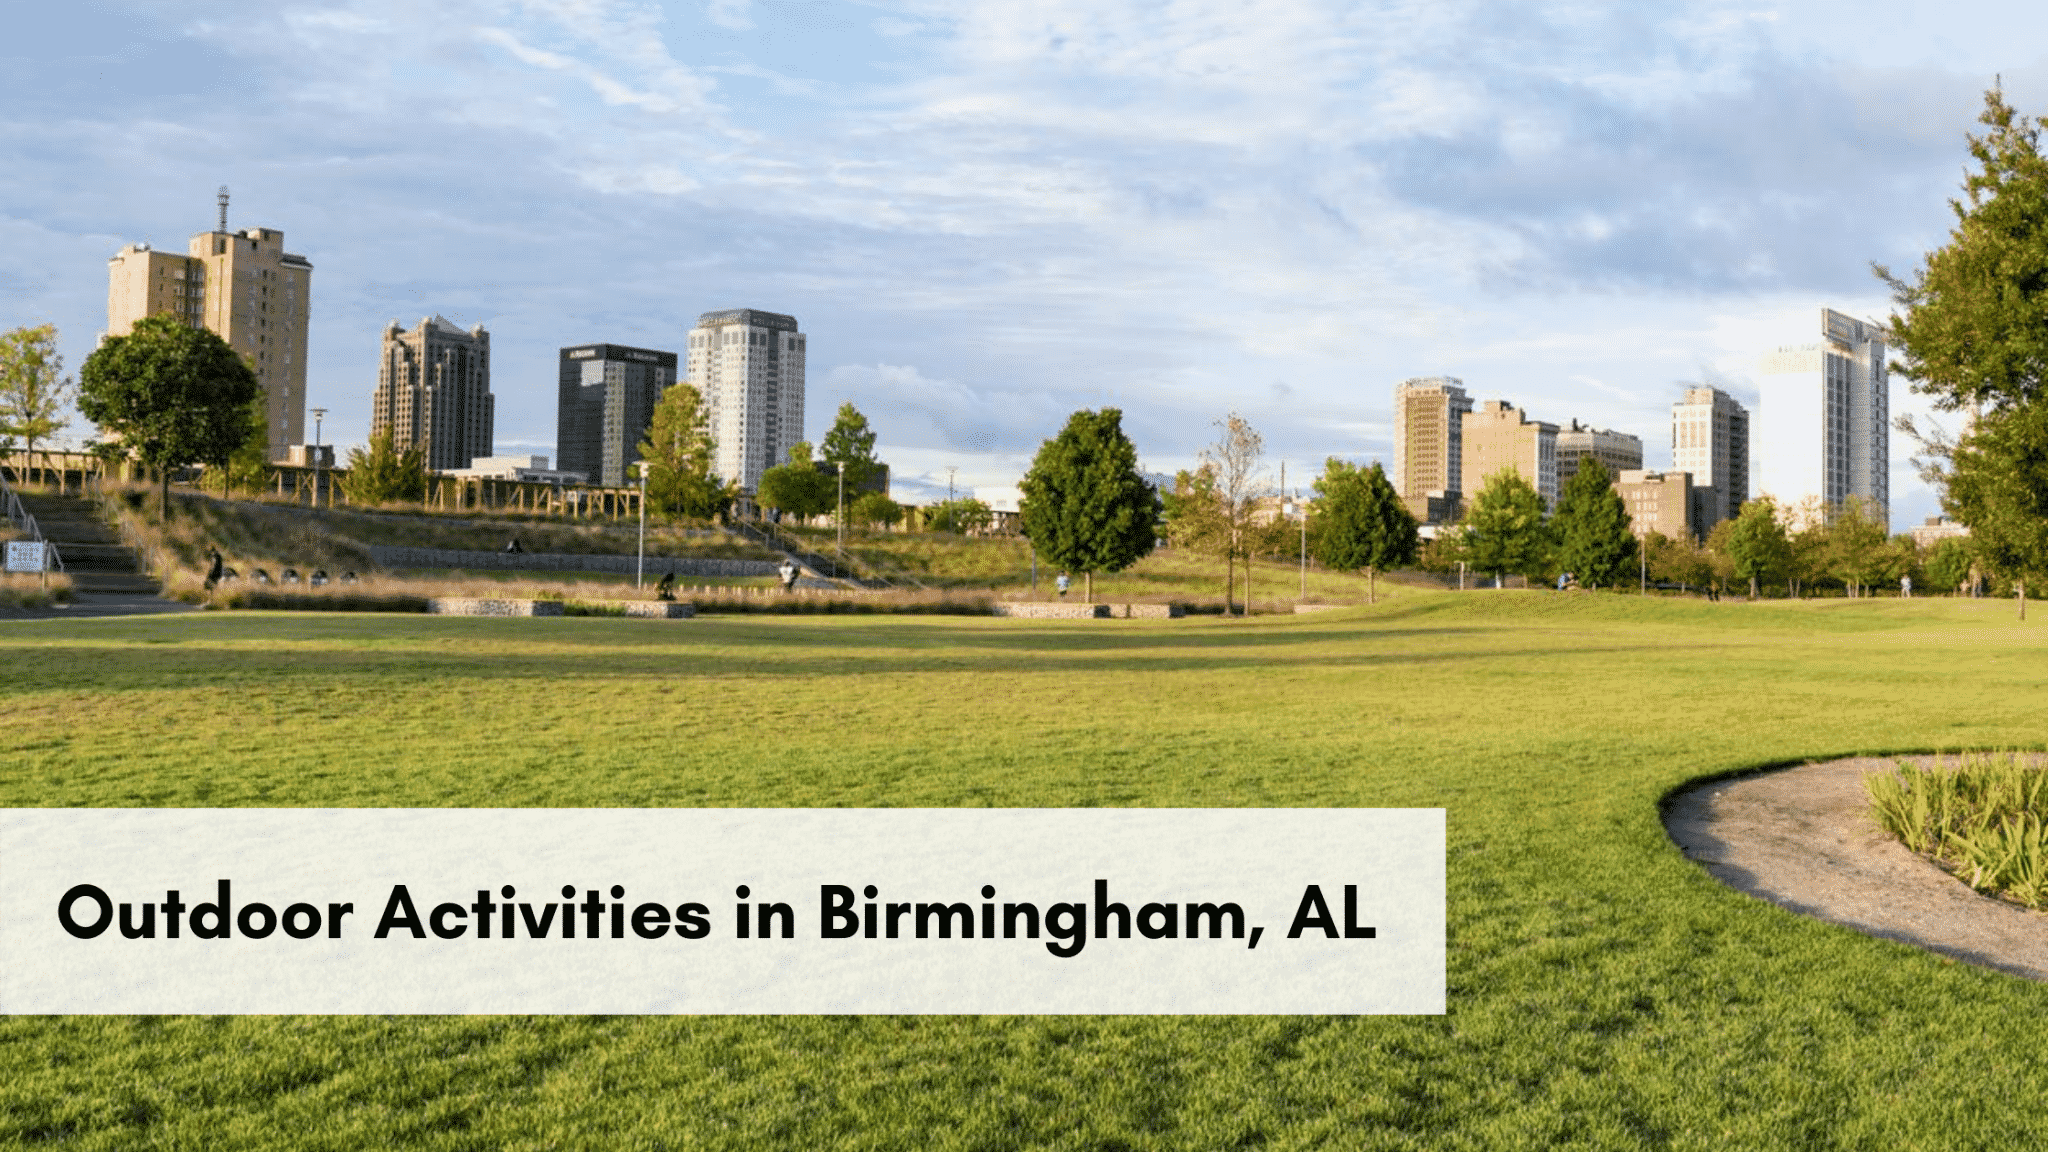 Explore Birmingham's outdoor activities